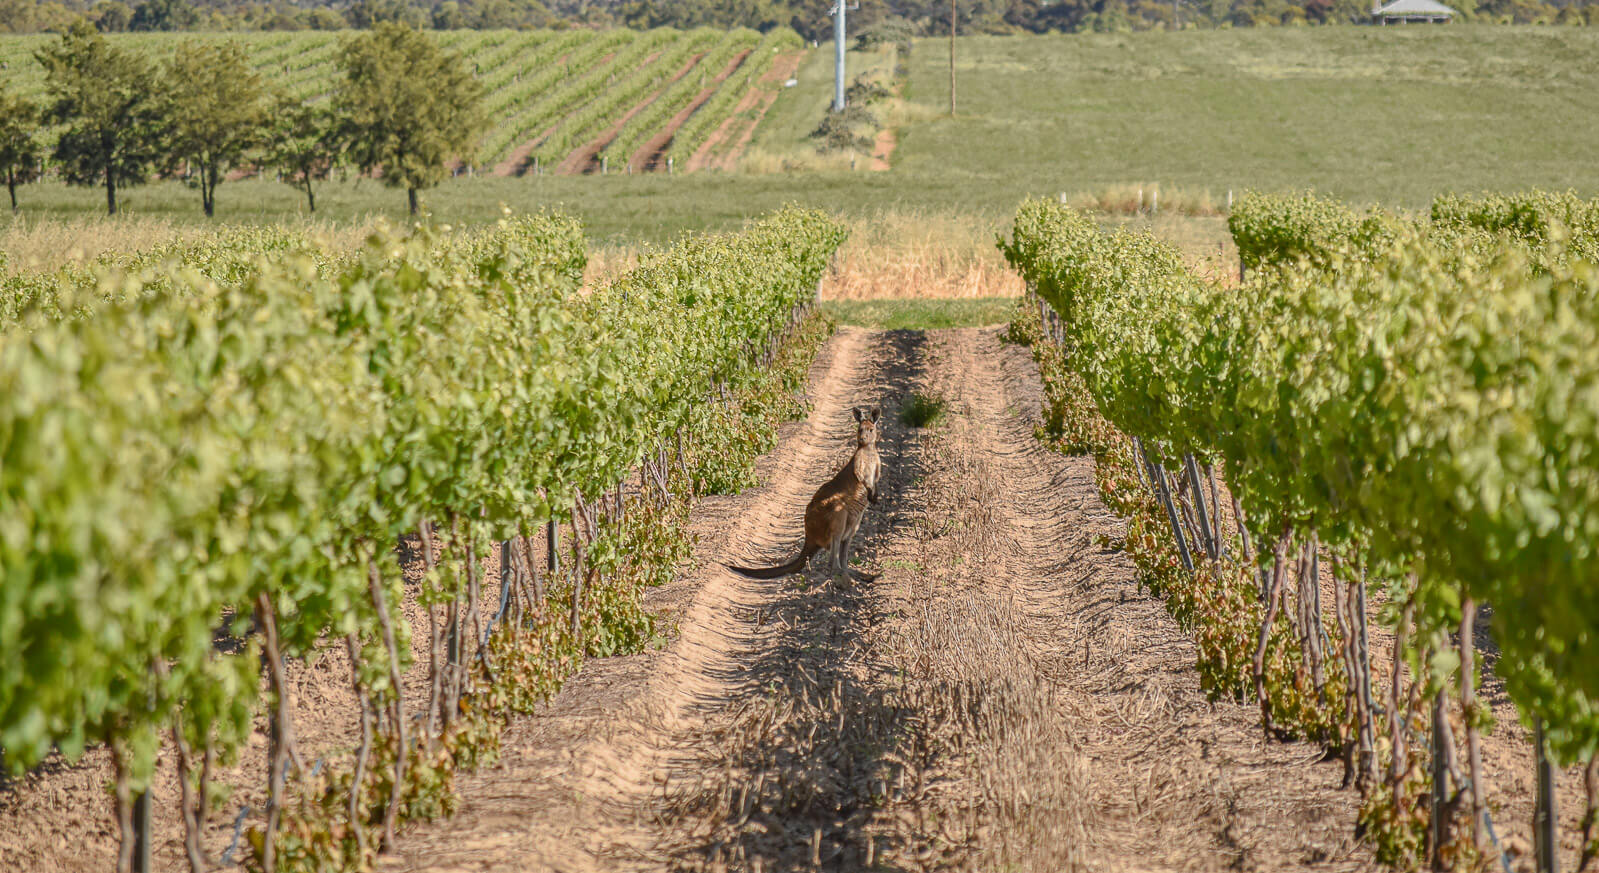 a kangaroo in between two rows of vines